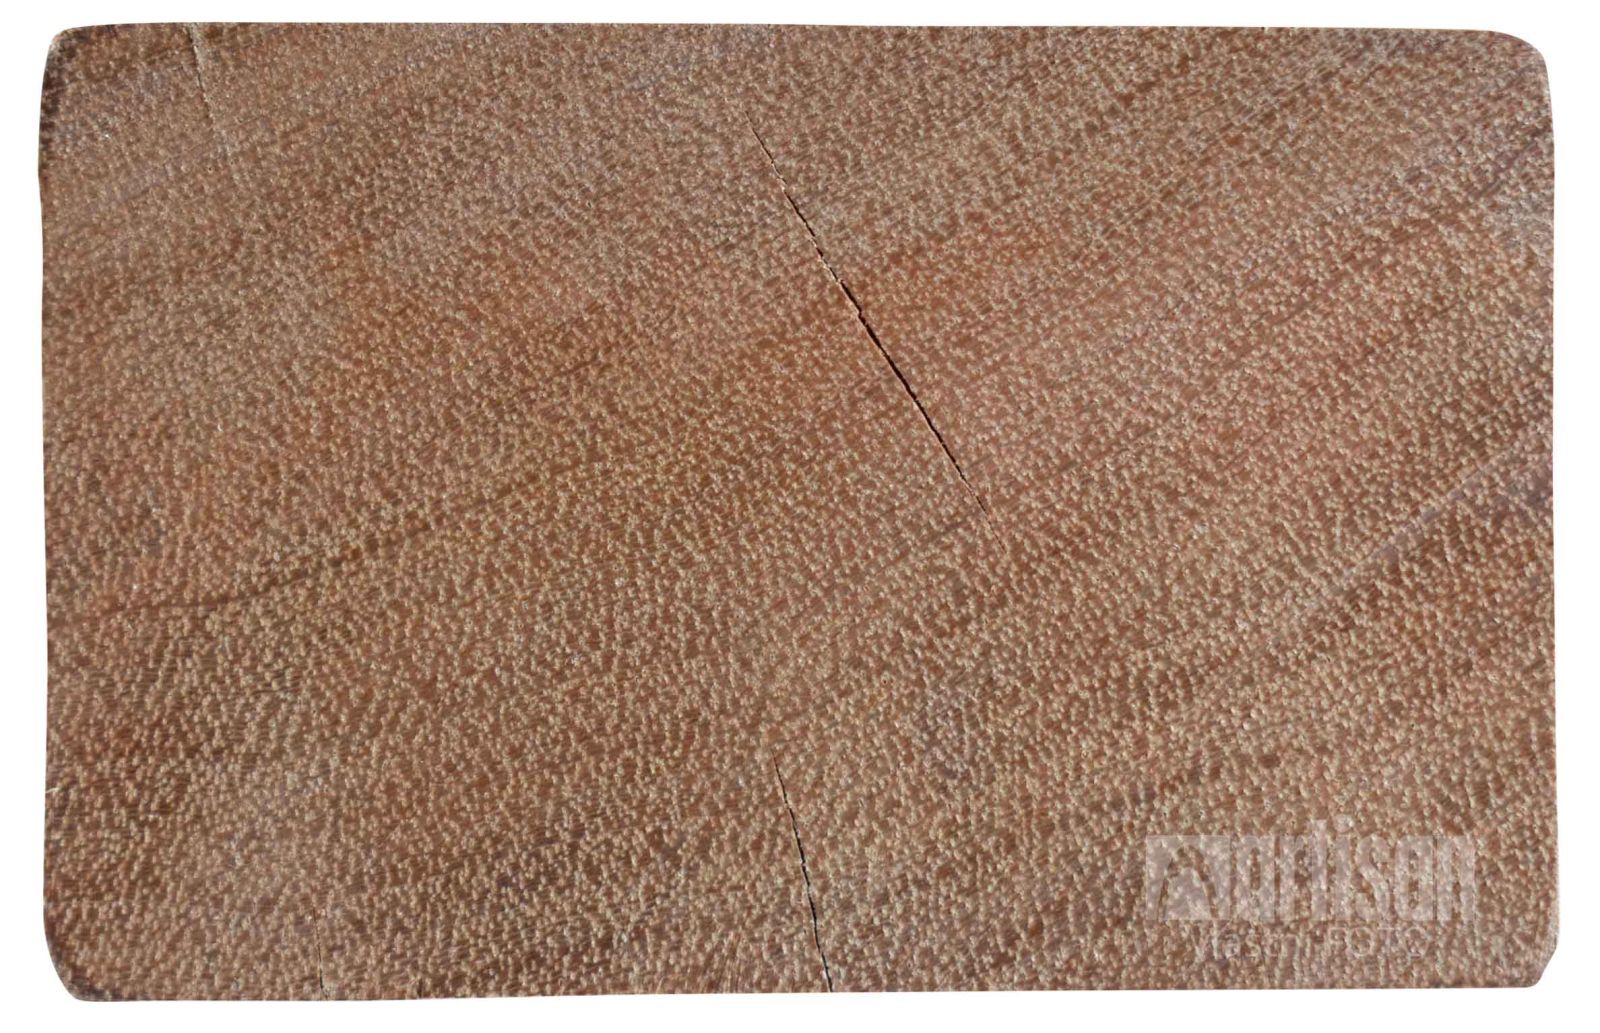 Podkladový dřevěný hranol Paraju - detail řezu